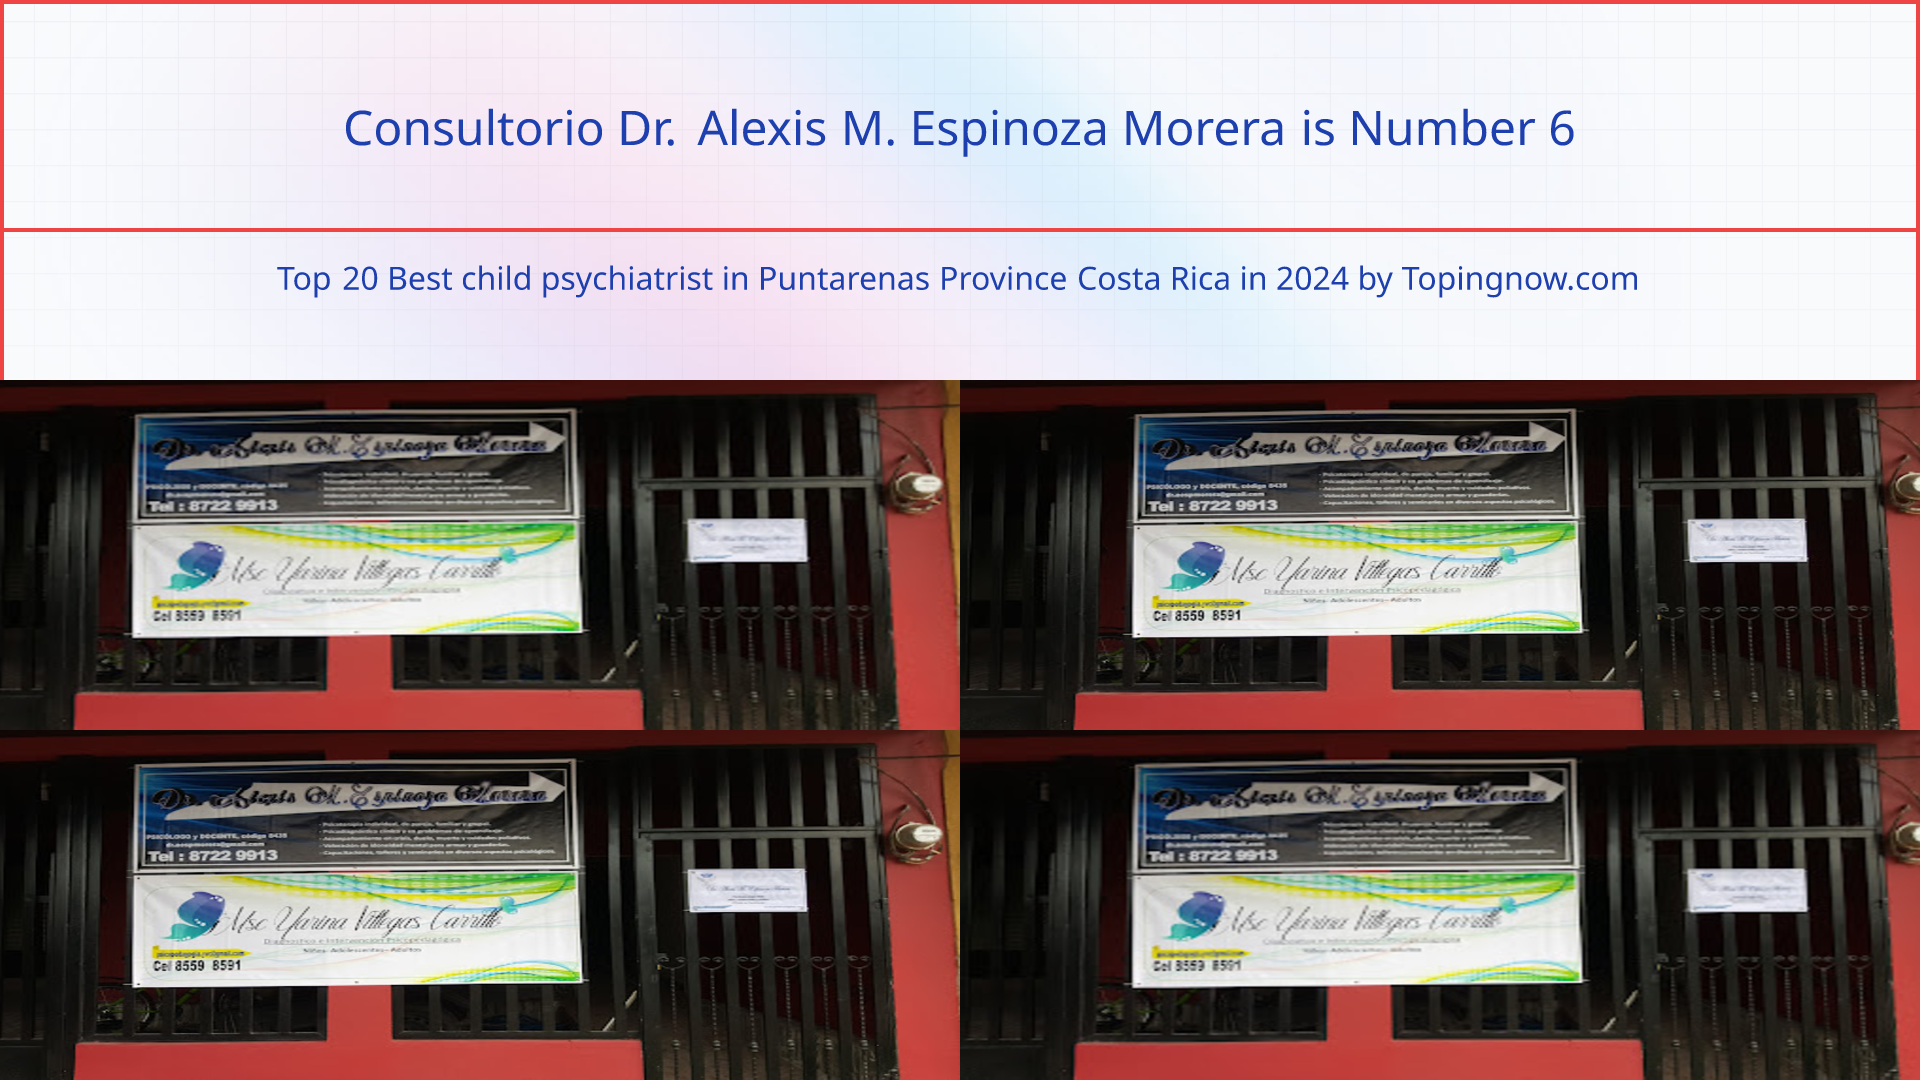 Consultorio Dr. Alexis M. Espinoza Morera: Top 20 Best child psychiatrist in Puntarenas Province Costa Rica in 2024